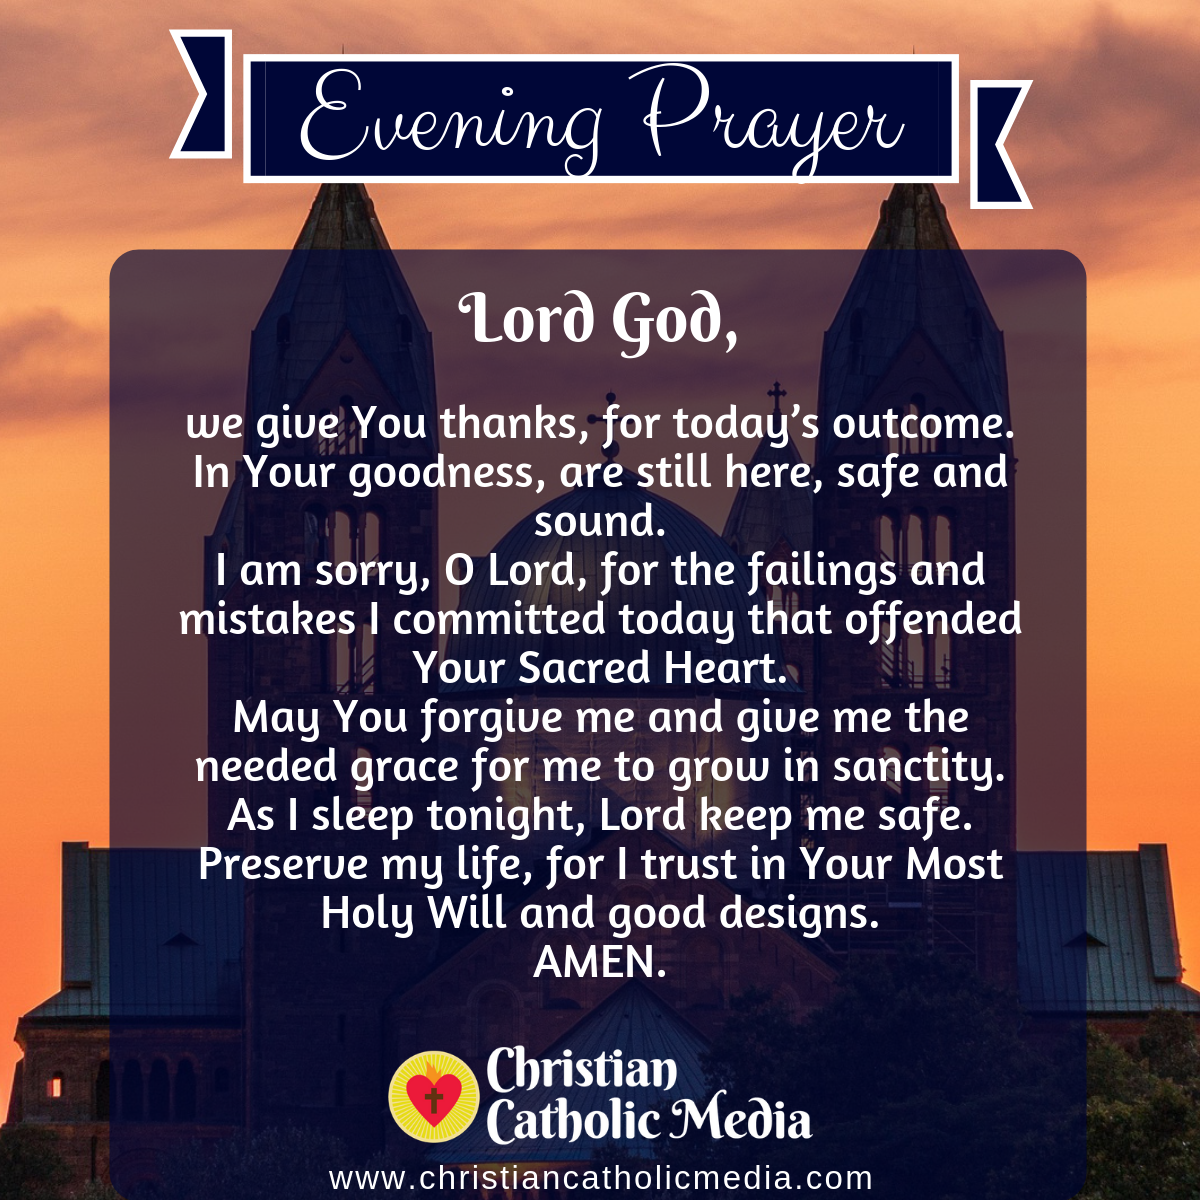 Evening Prayer Catholic Thursday 4-23-2020 – Christian Catholic Media